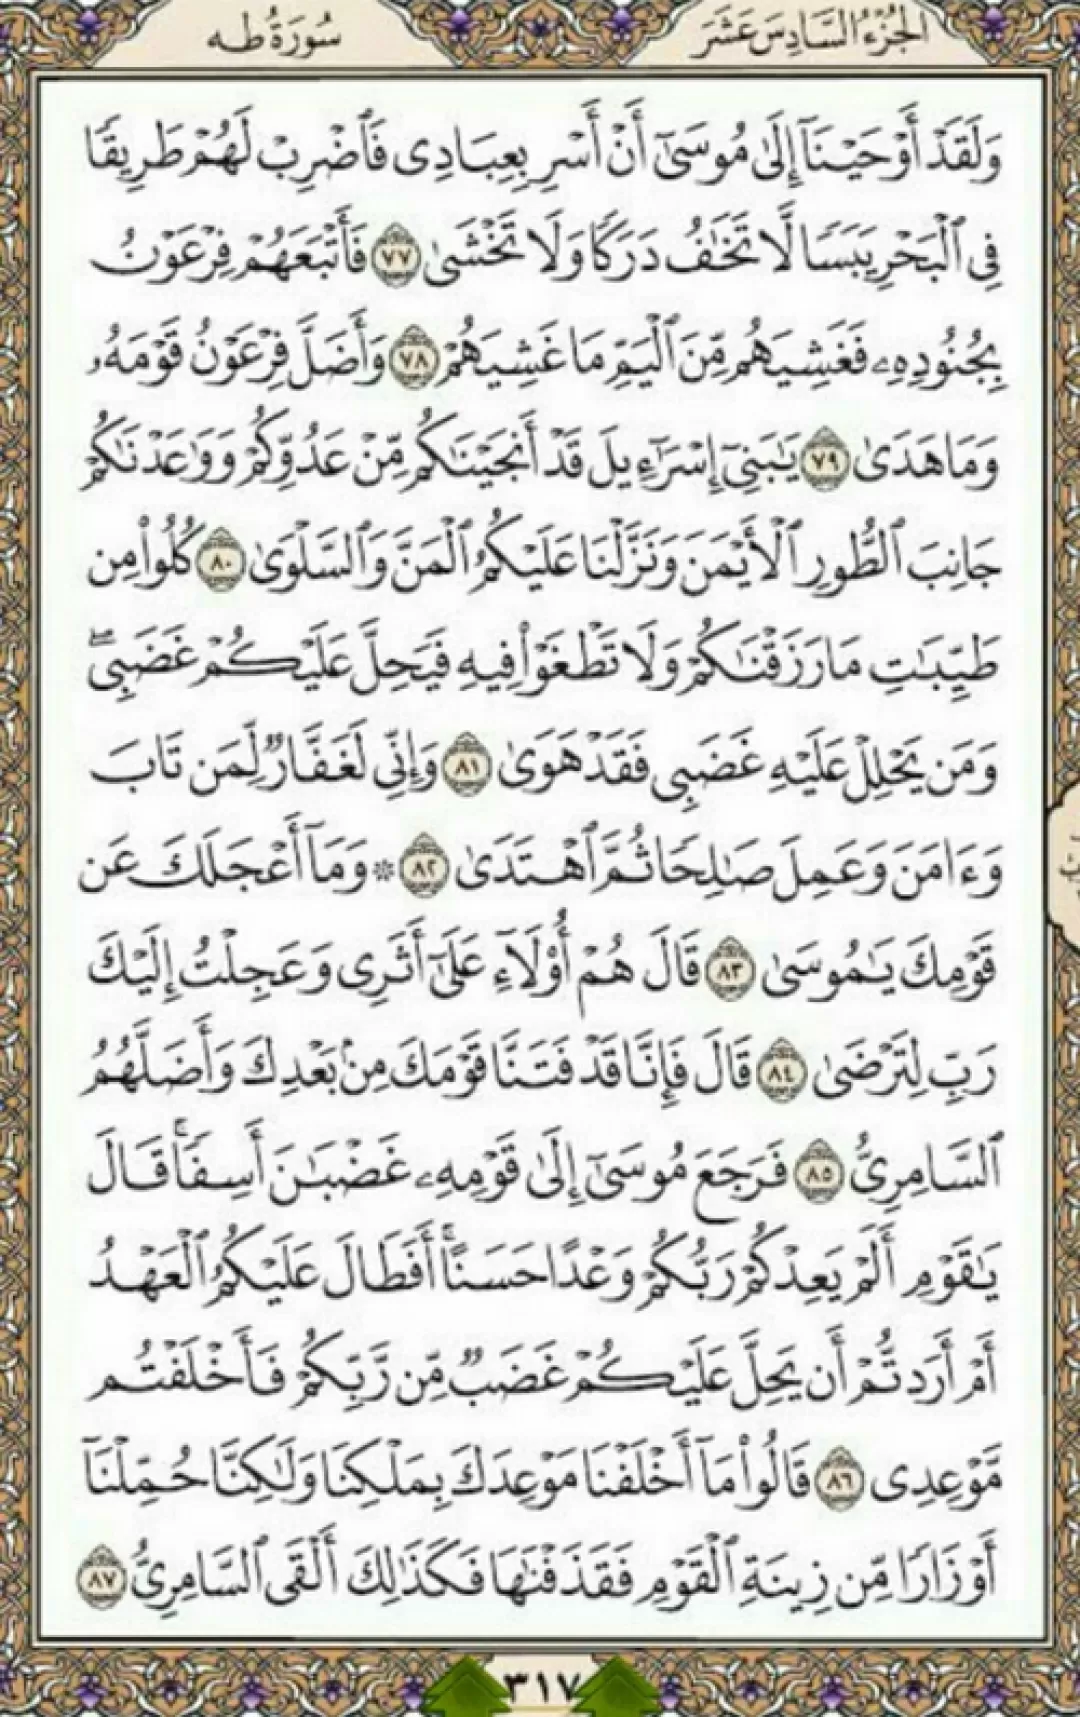 روزانه یک صفحه از نسیم نورانی قرآن مجید